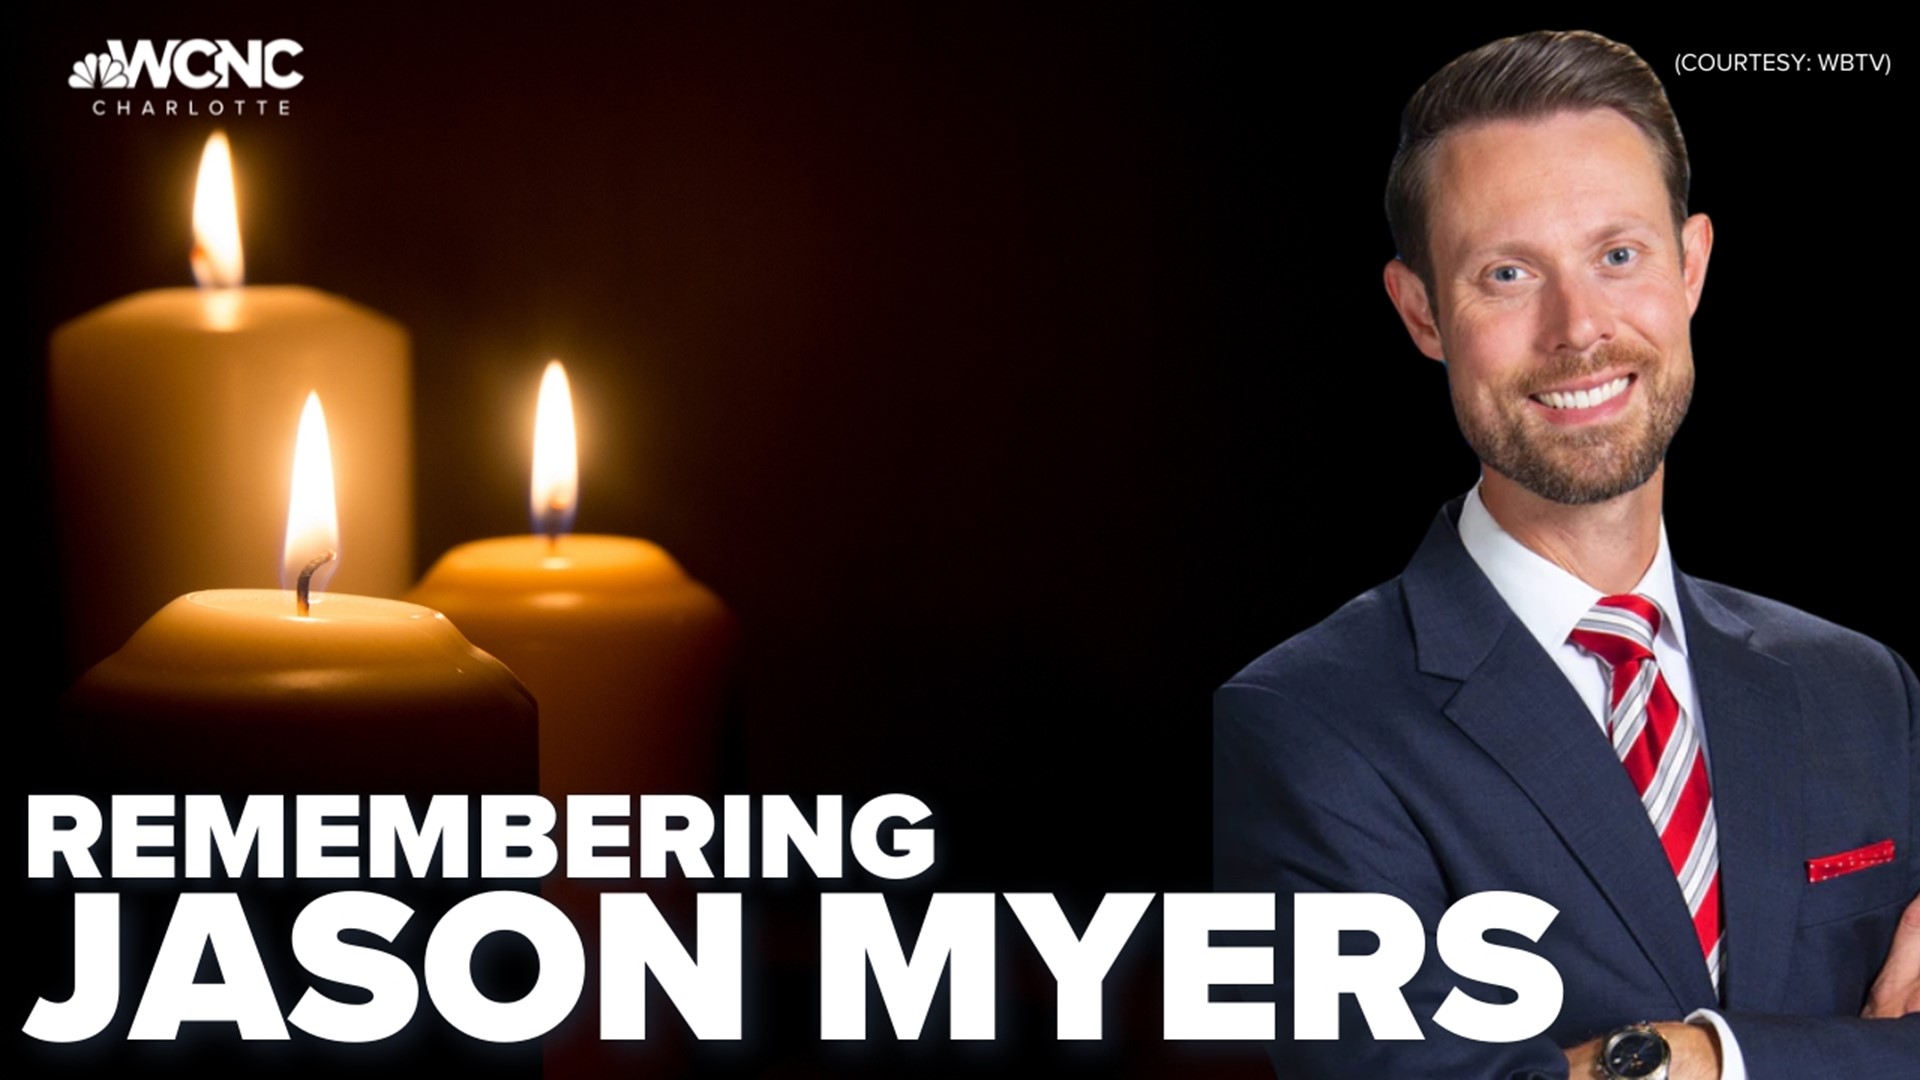 Siapakah ahli meteorologi WBTV Jason Myers?